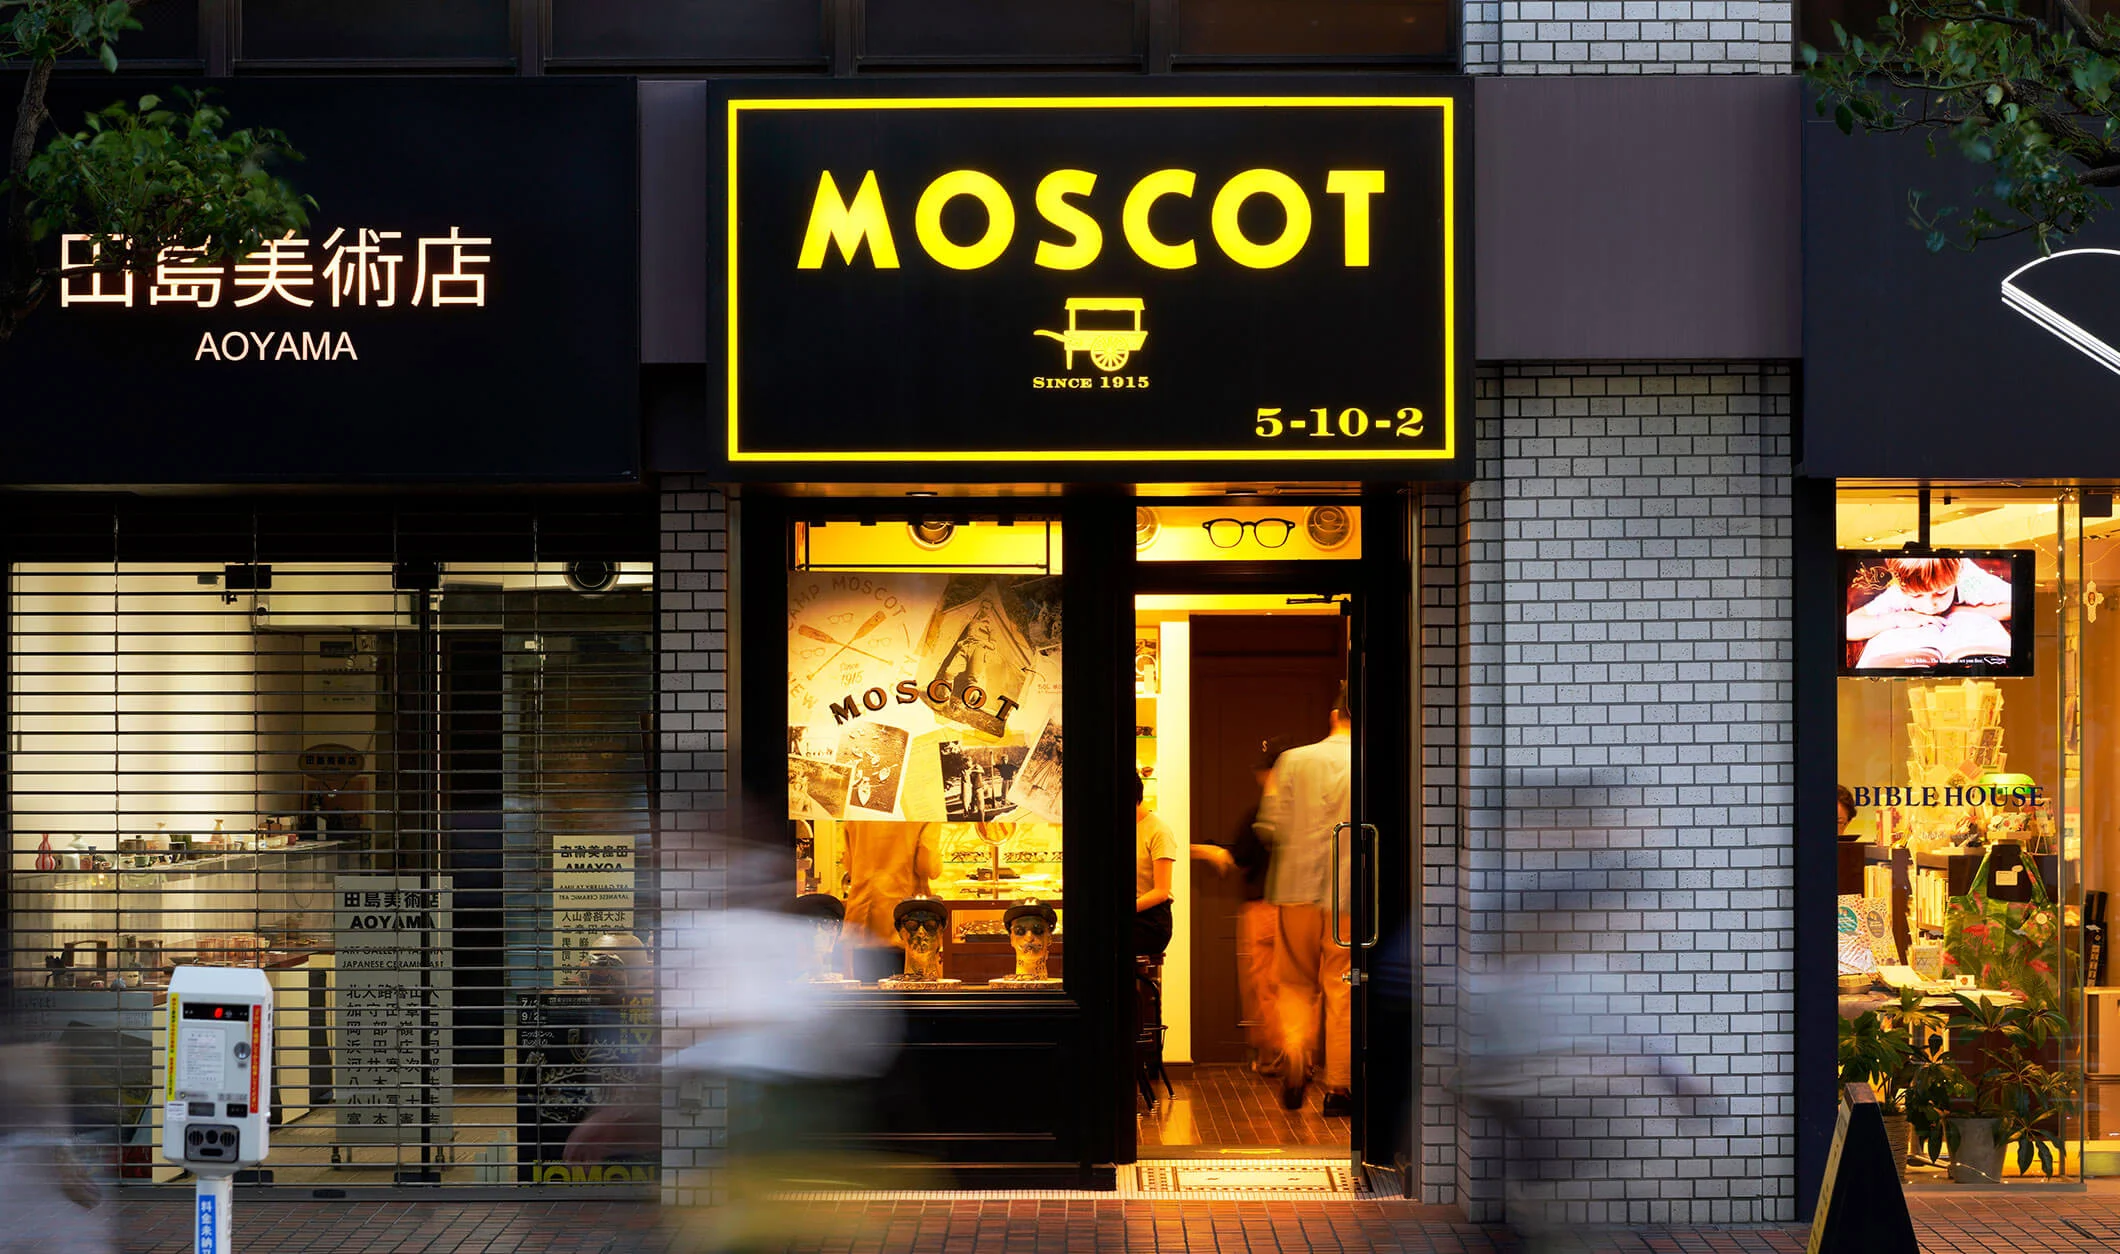 The MOSCOT Tokyo Shop exterior